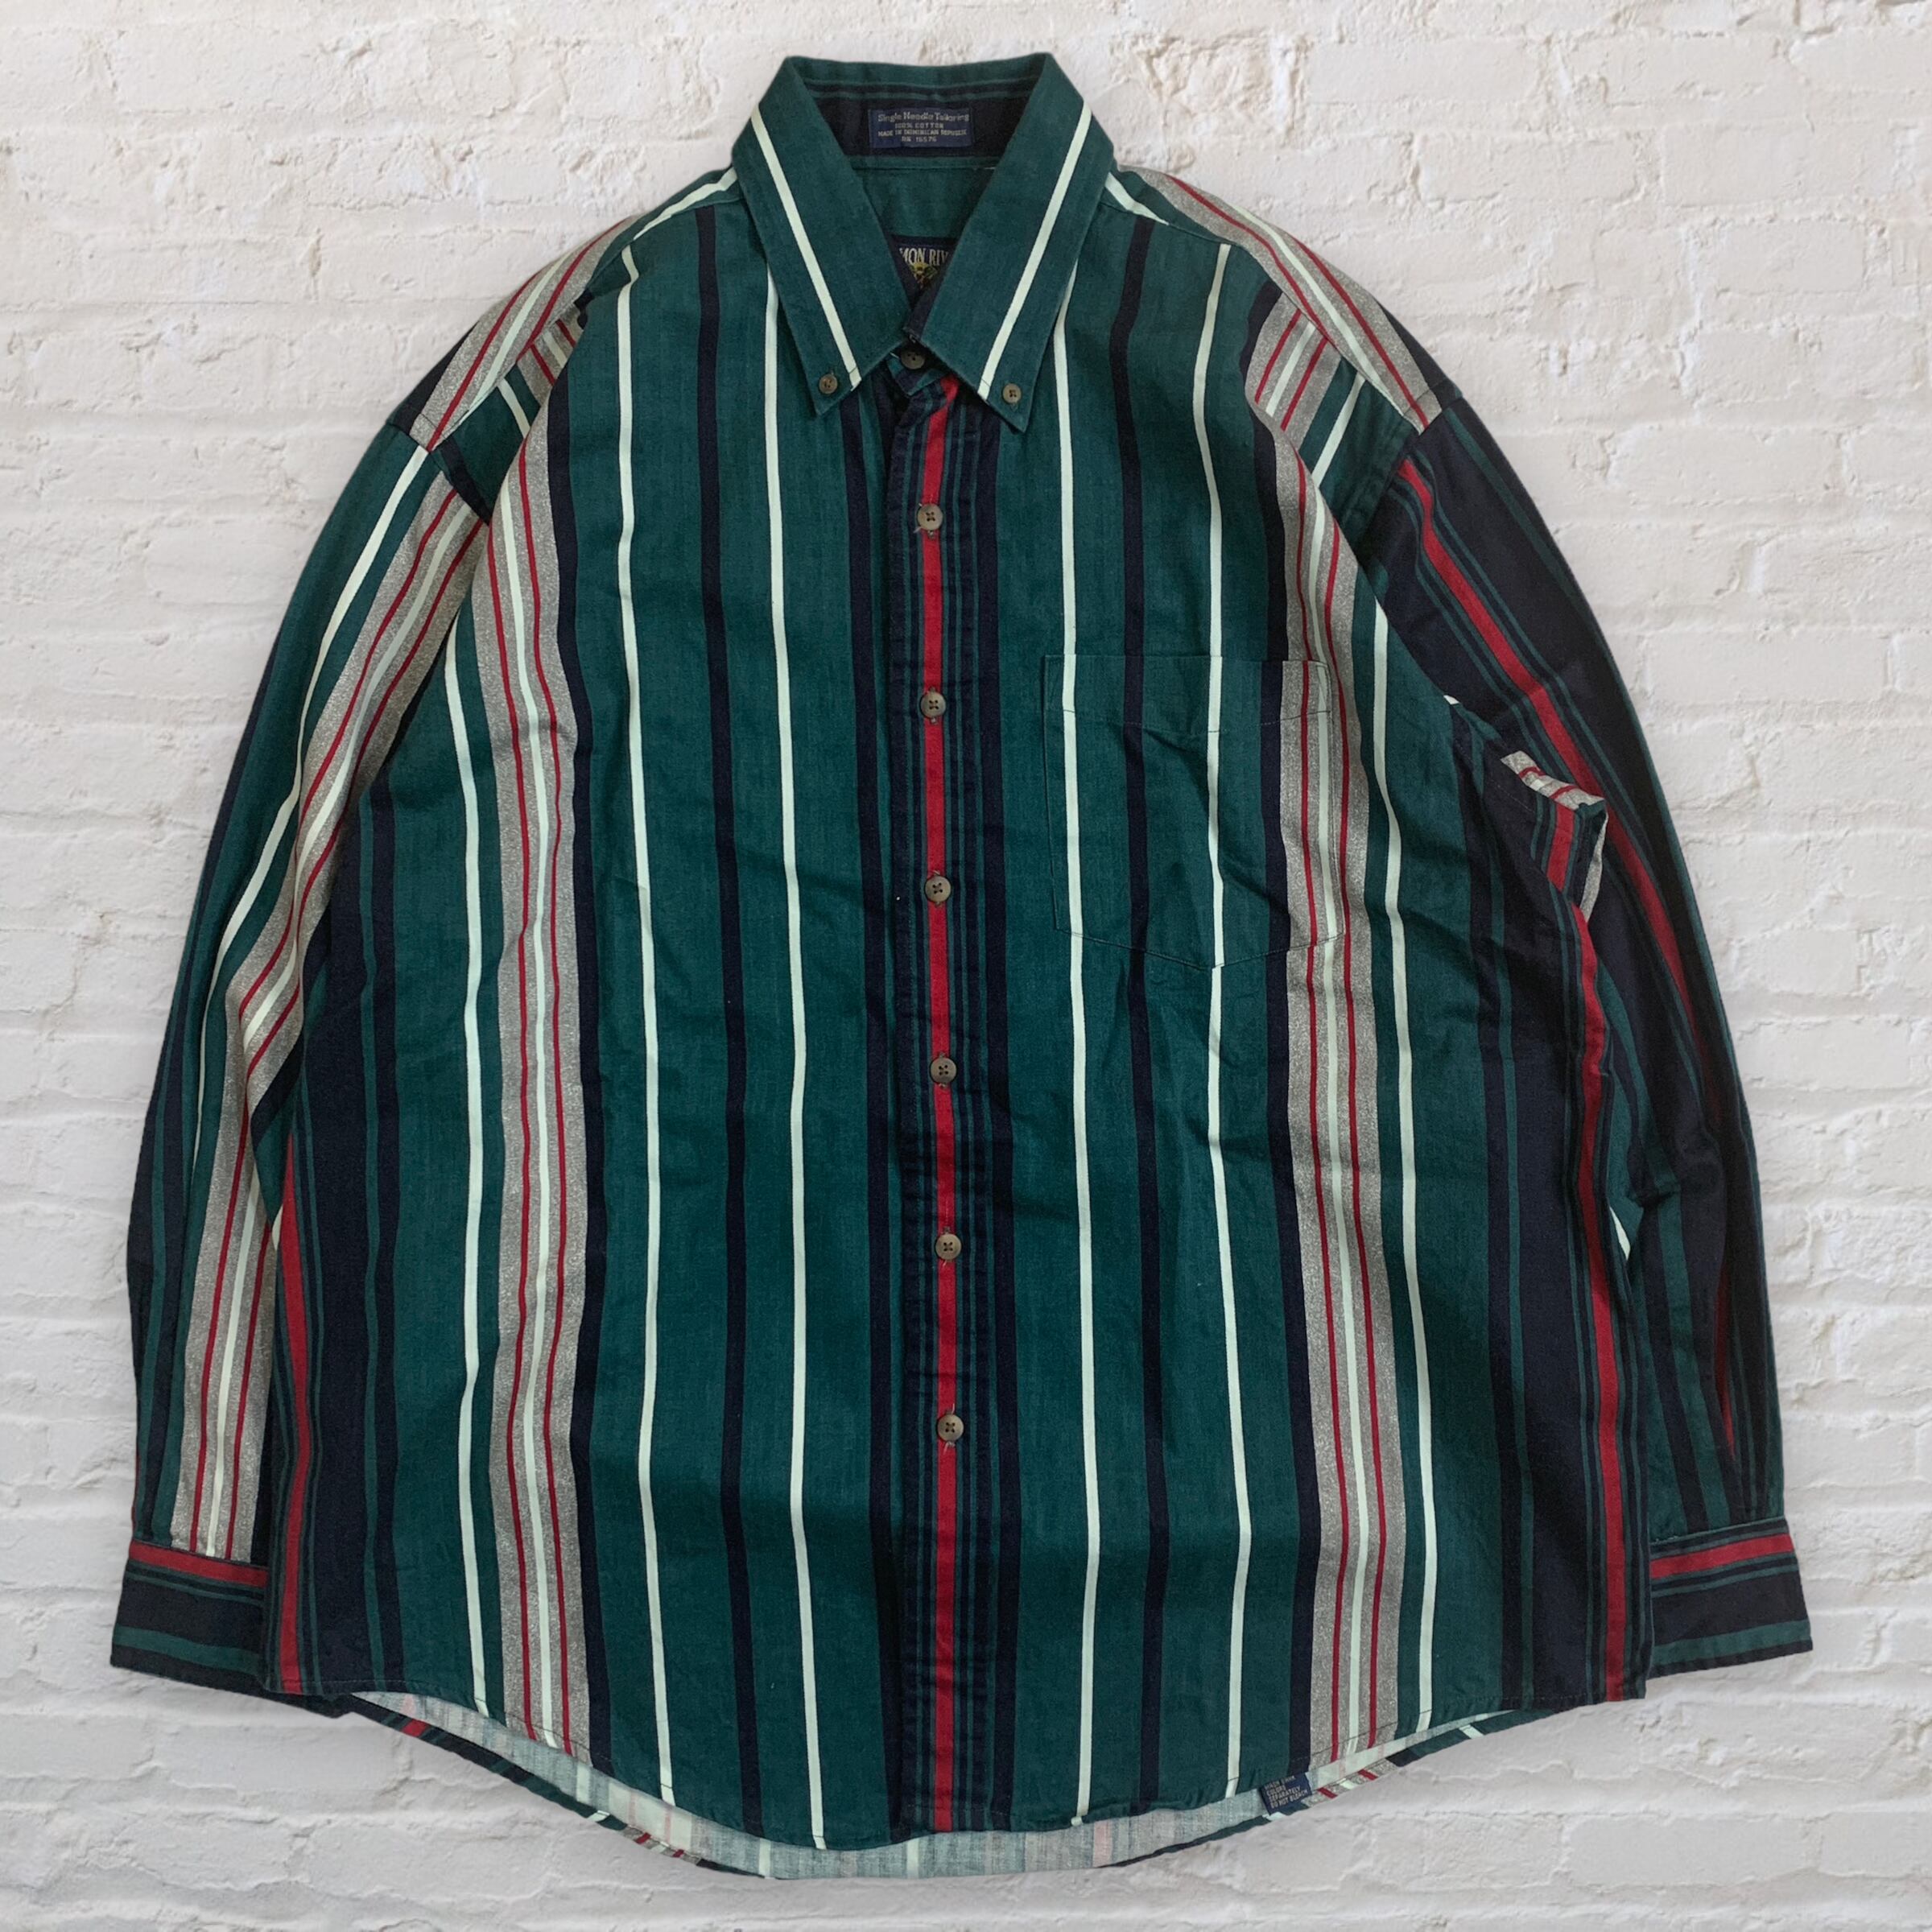 90s vintage oversize shirt